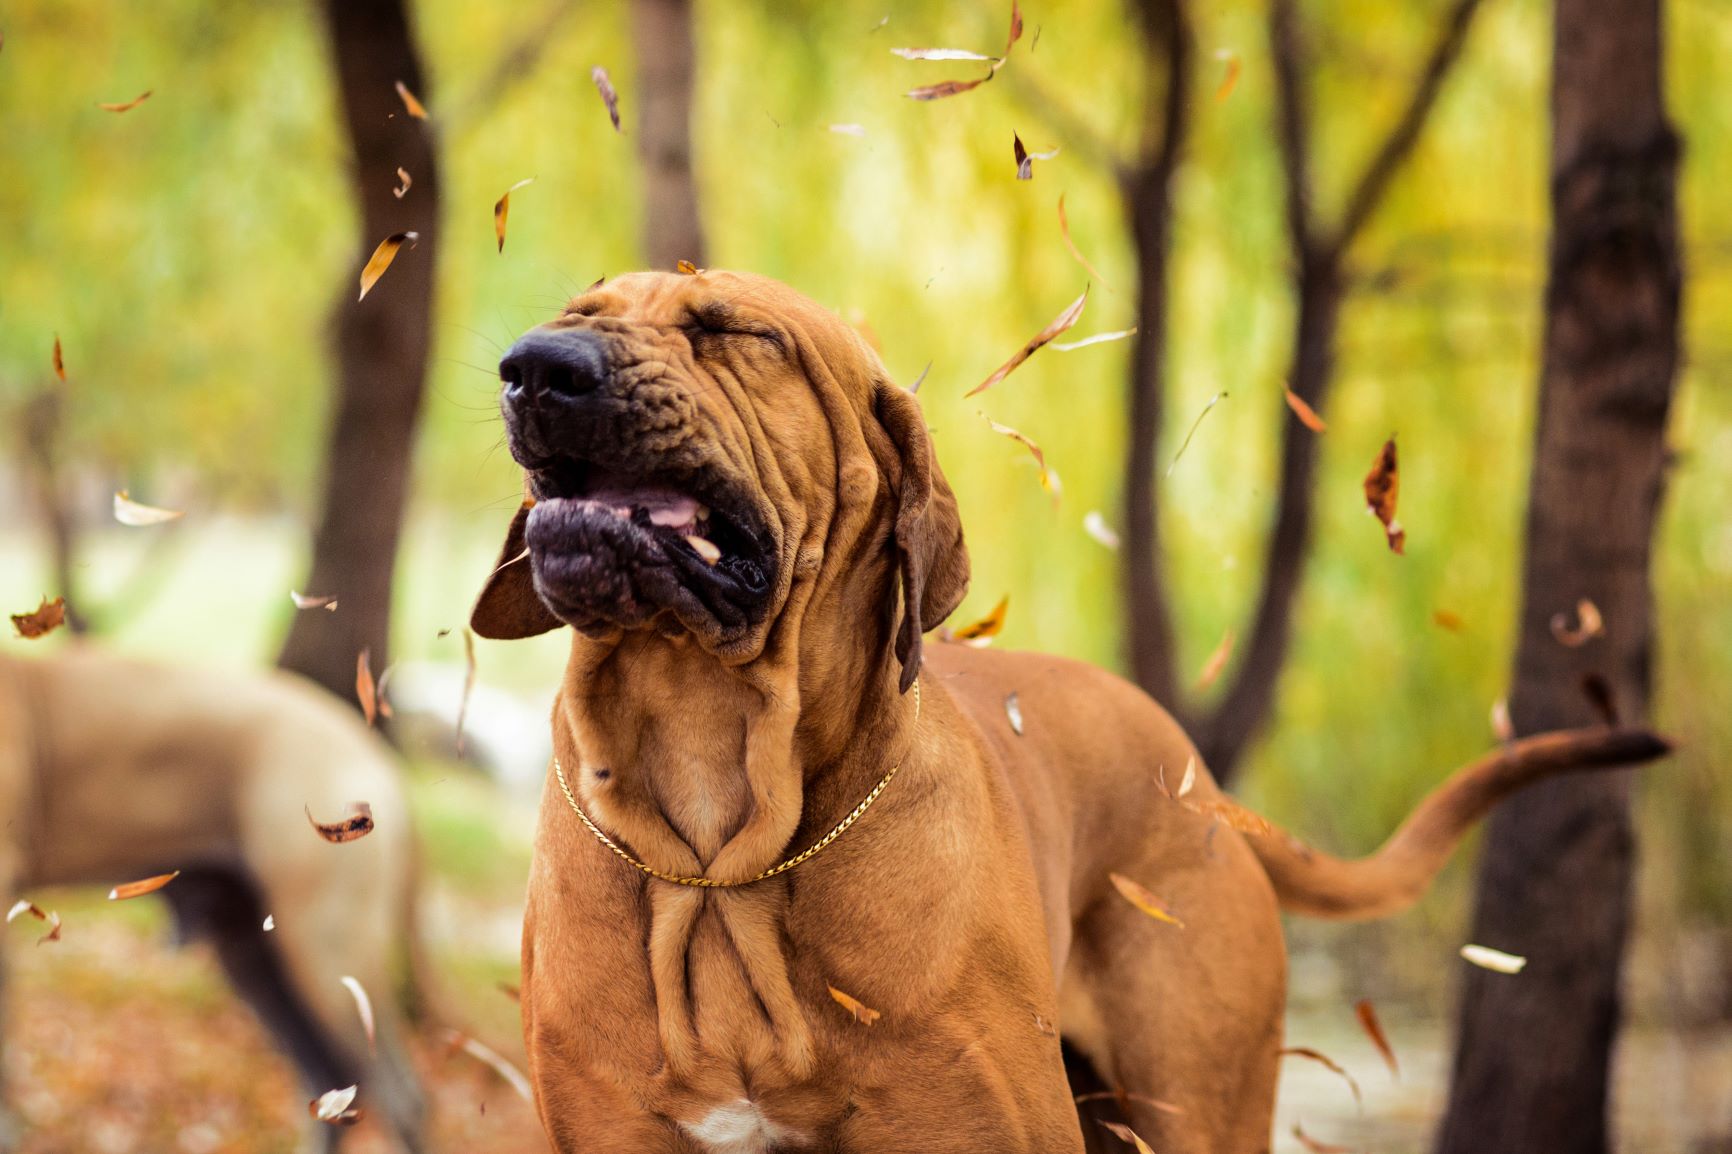 Zwingerhusten beim Hund: Symptome & Behandlung zooplus